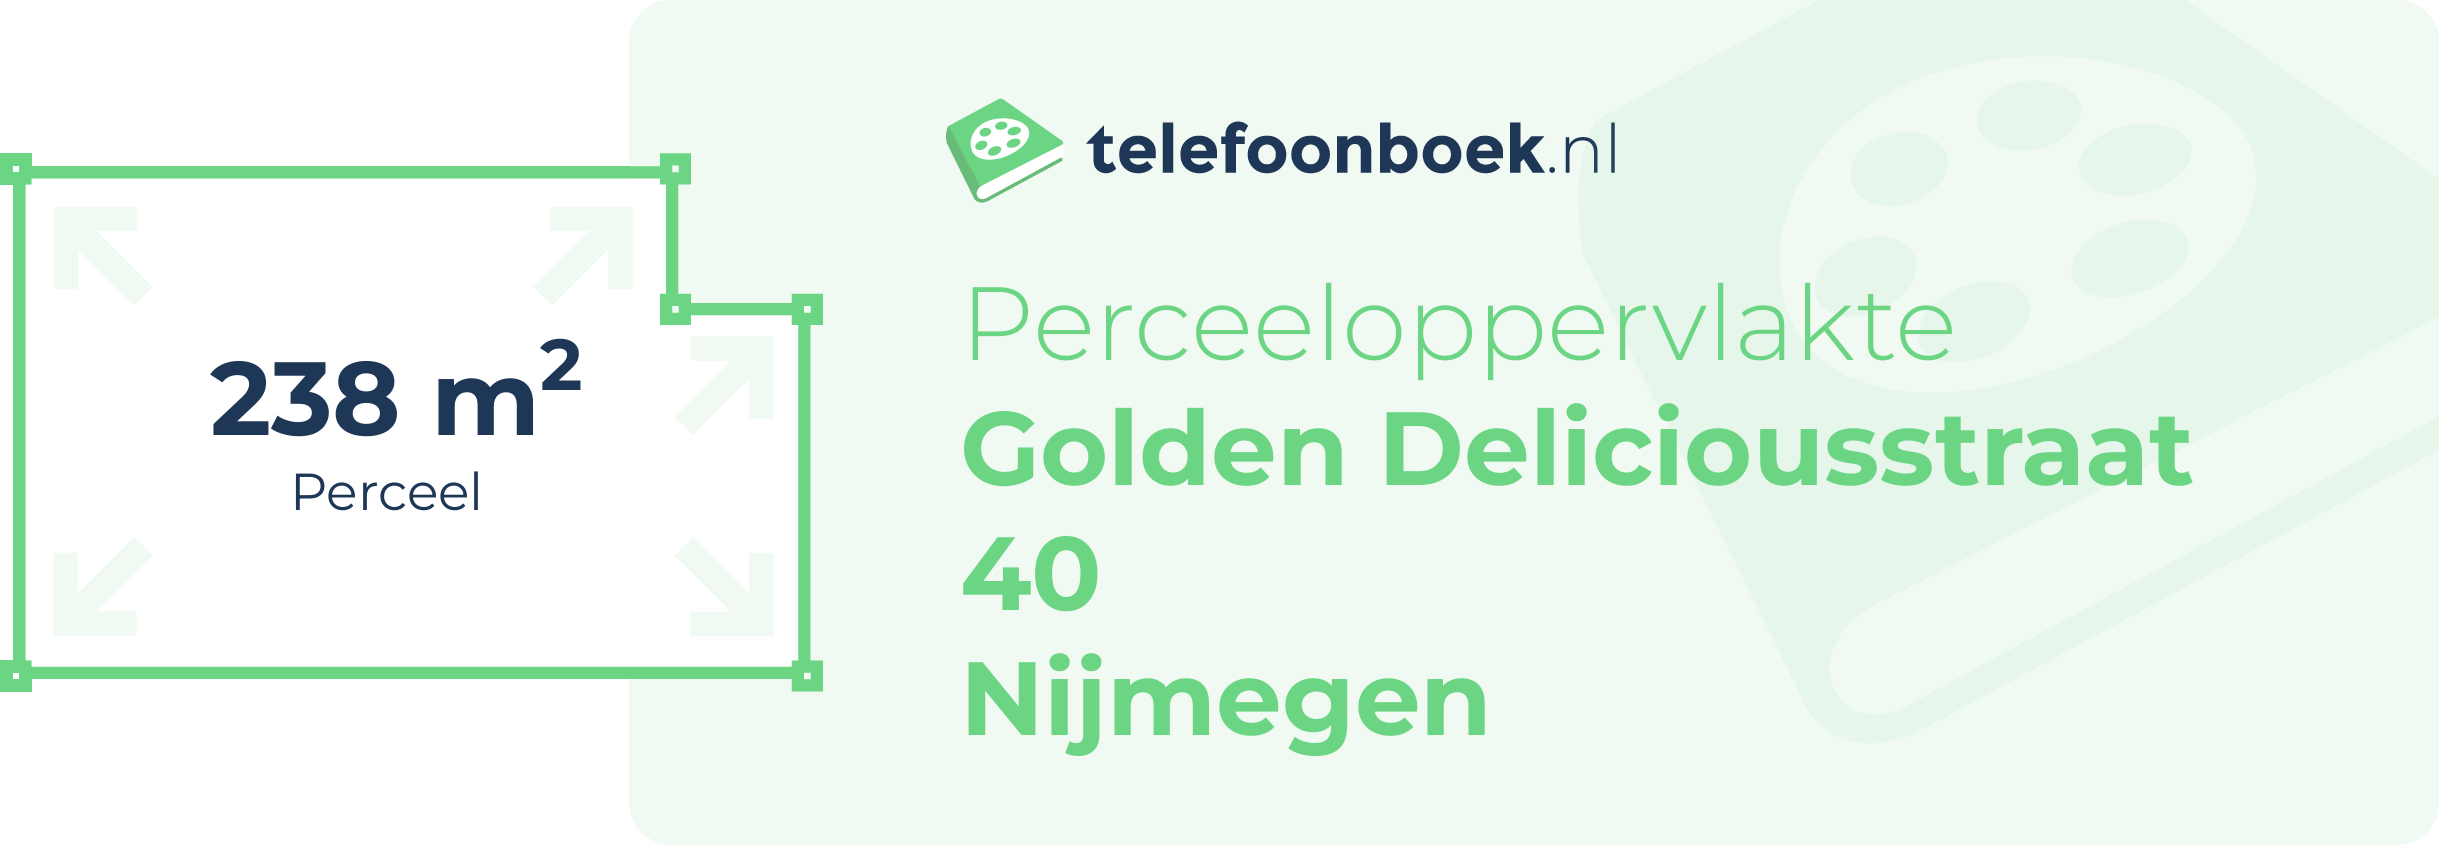 Perceeloppervlakte Golden Deliciousstraat 40 Nijmegen